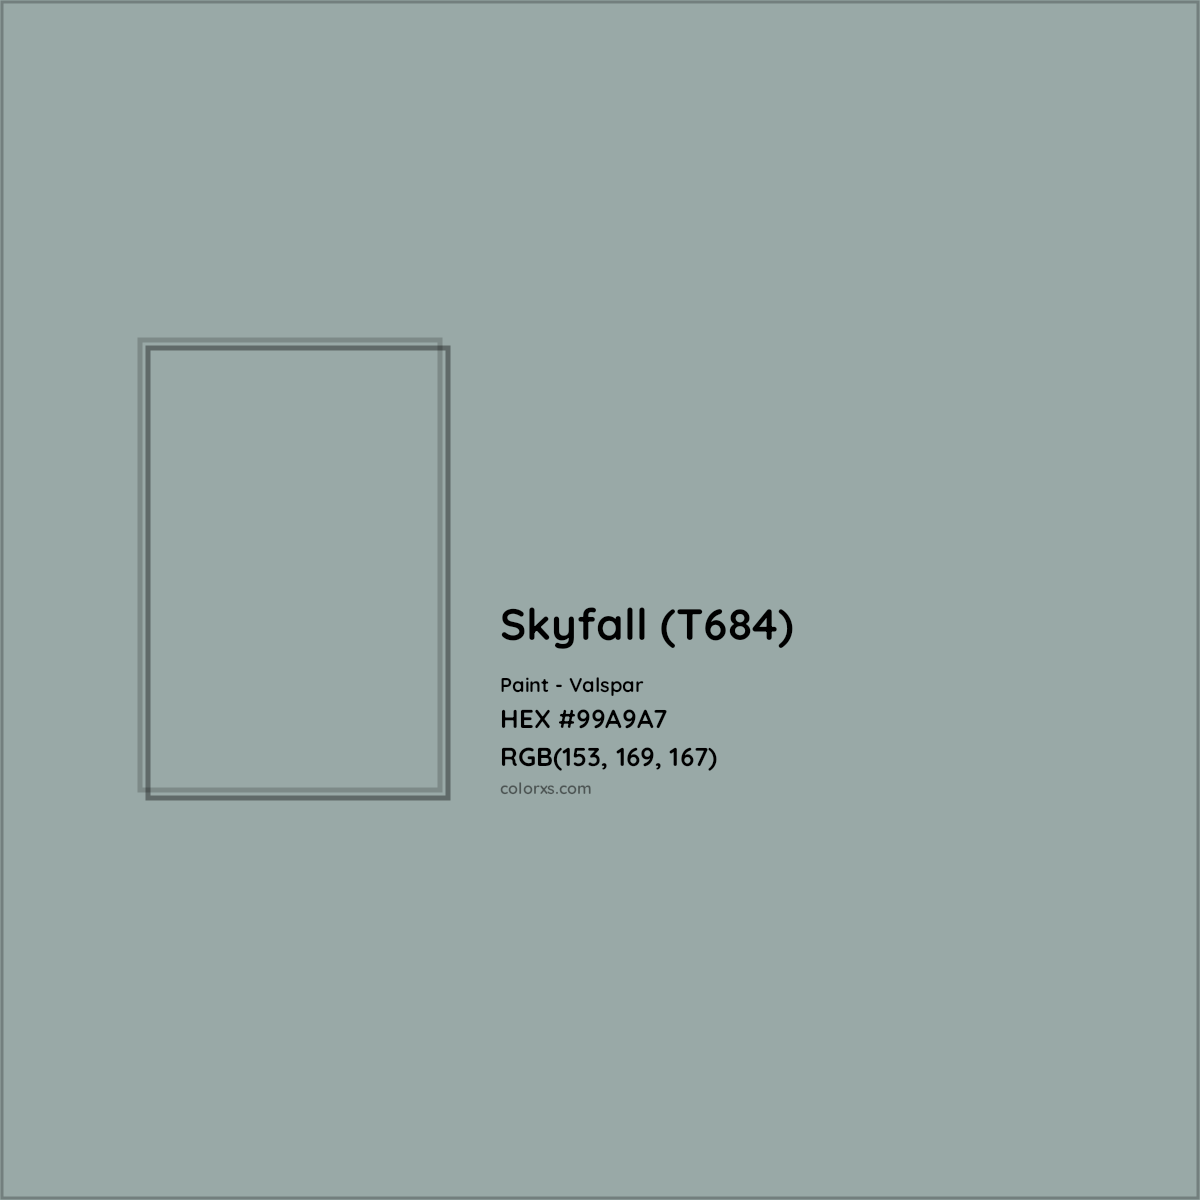 HEX #99A9A7 Skyfall (T684) Paint Valspar - Color Code